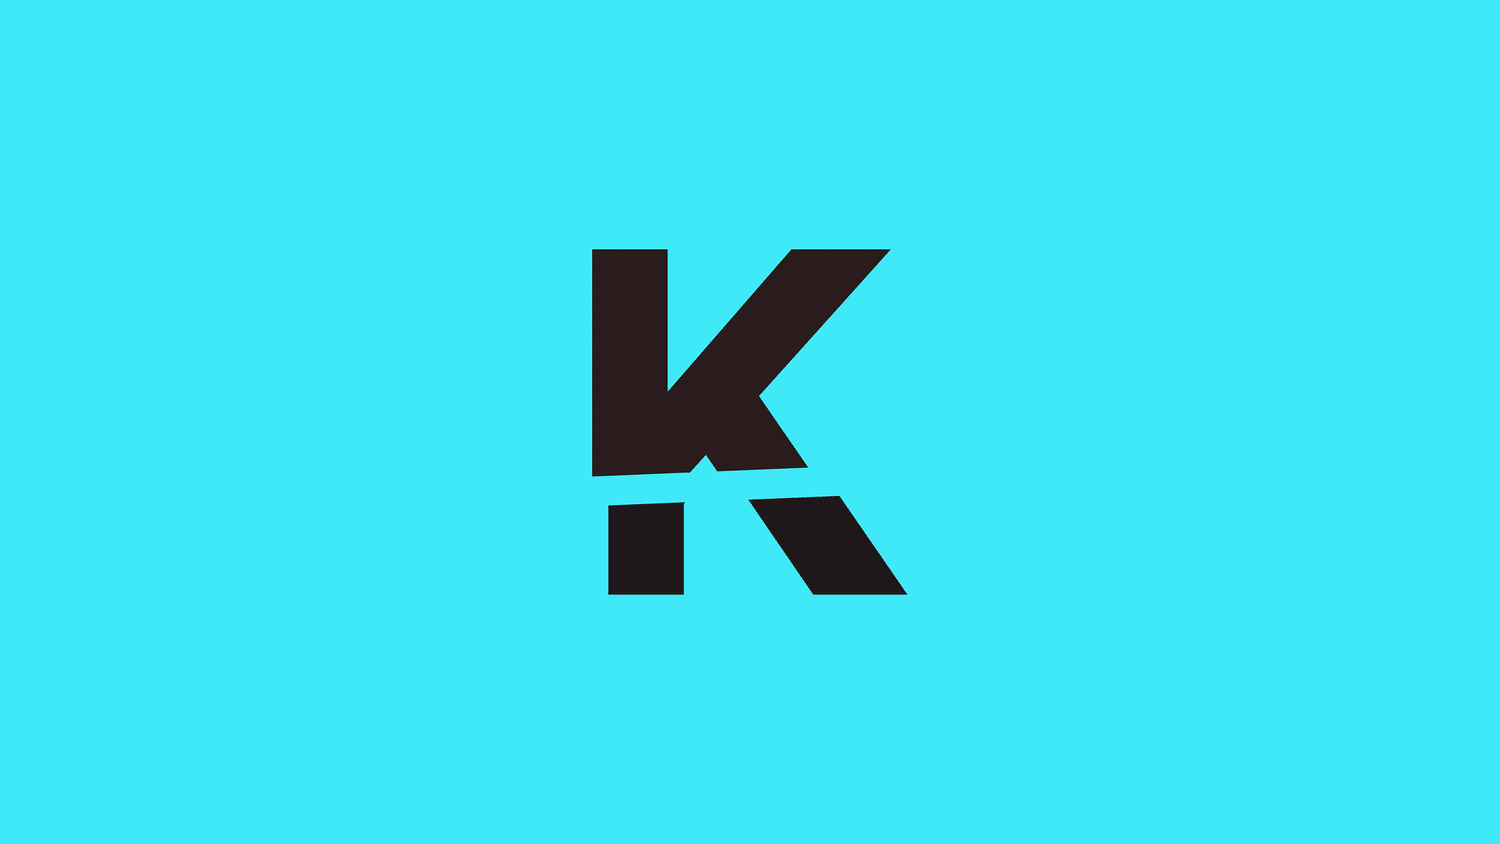 killjoy logo on solid background